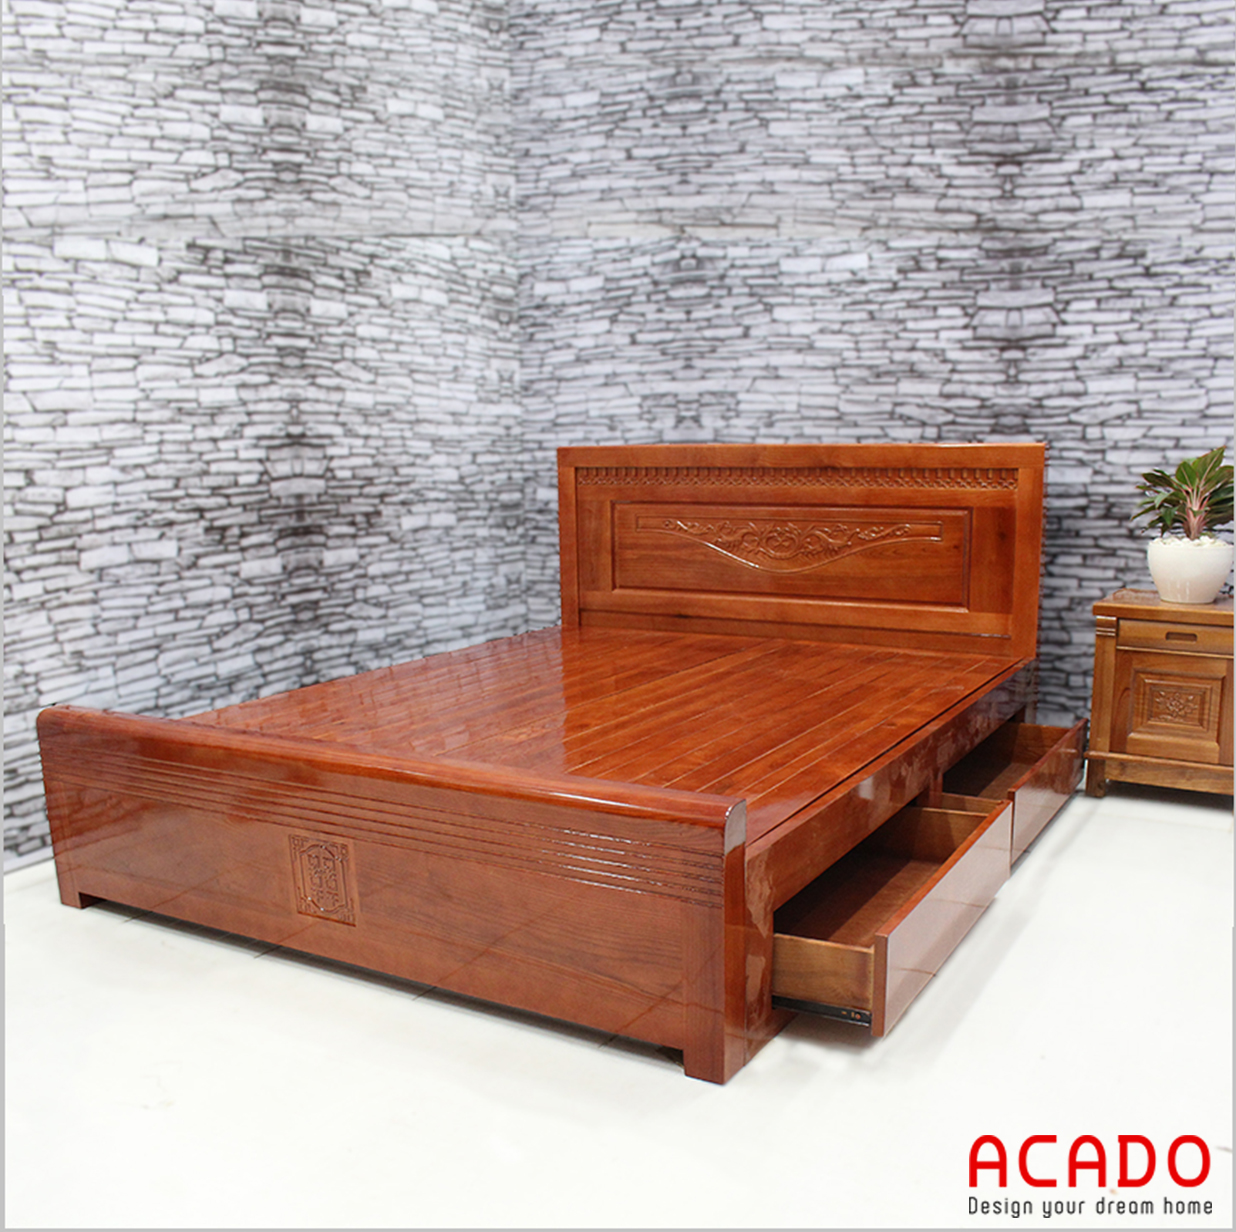 Acado- đơn vị đóng giường gỗ uy tín, chất lượng tại Hà Nội